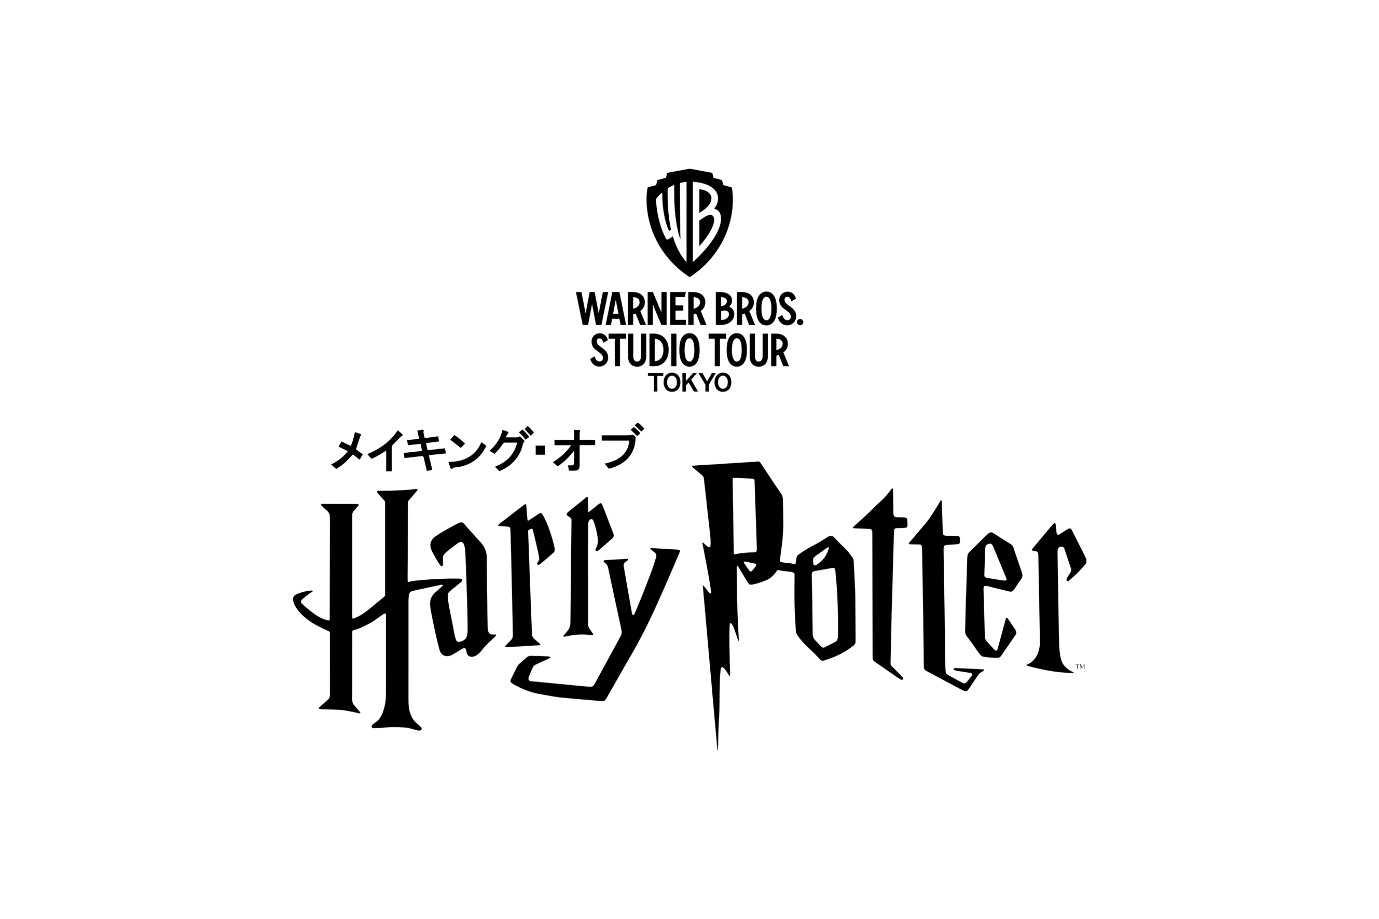 華納兄弟將於日本打造「哈利波特」園區 預定 2023 年正式開幕